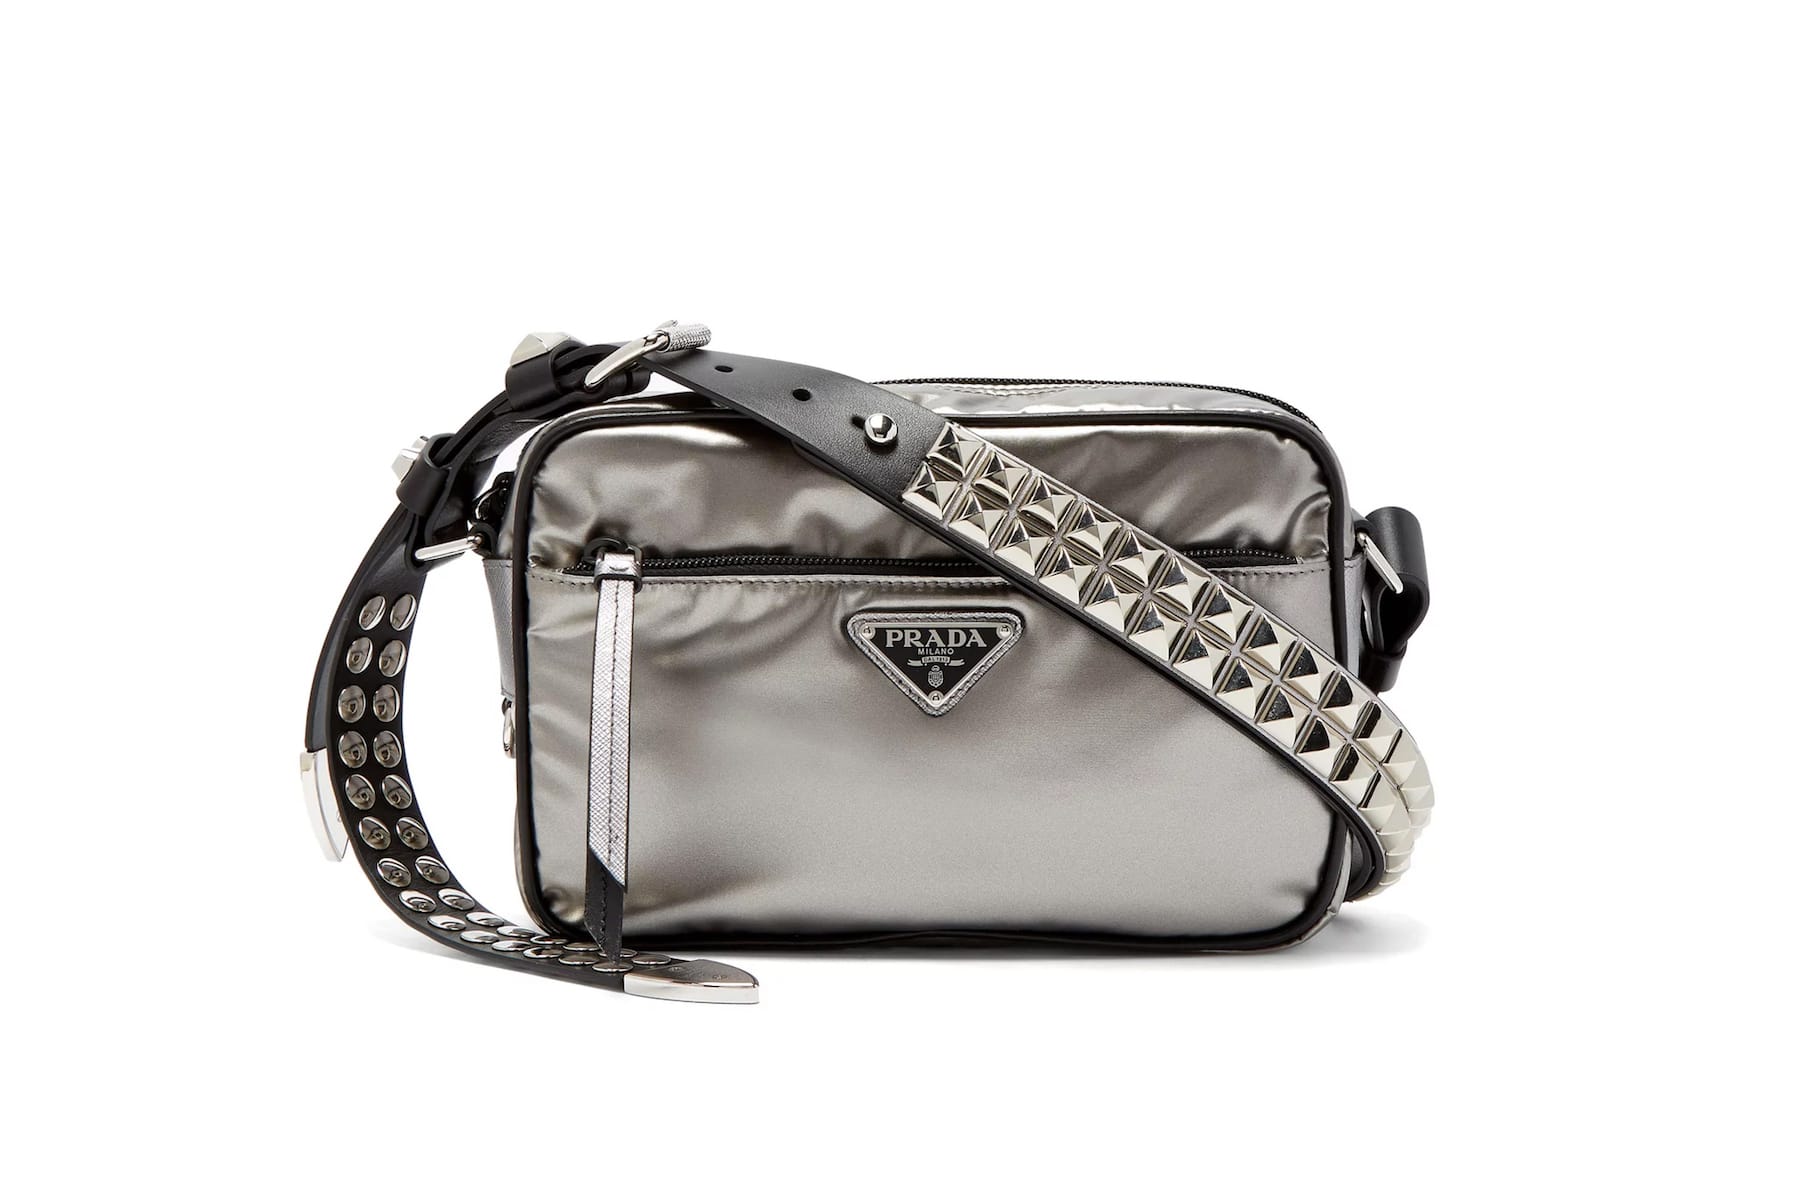 Prada's New Silver Nylon Cross-Body Bag 